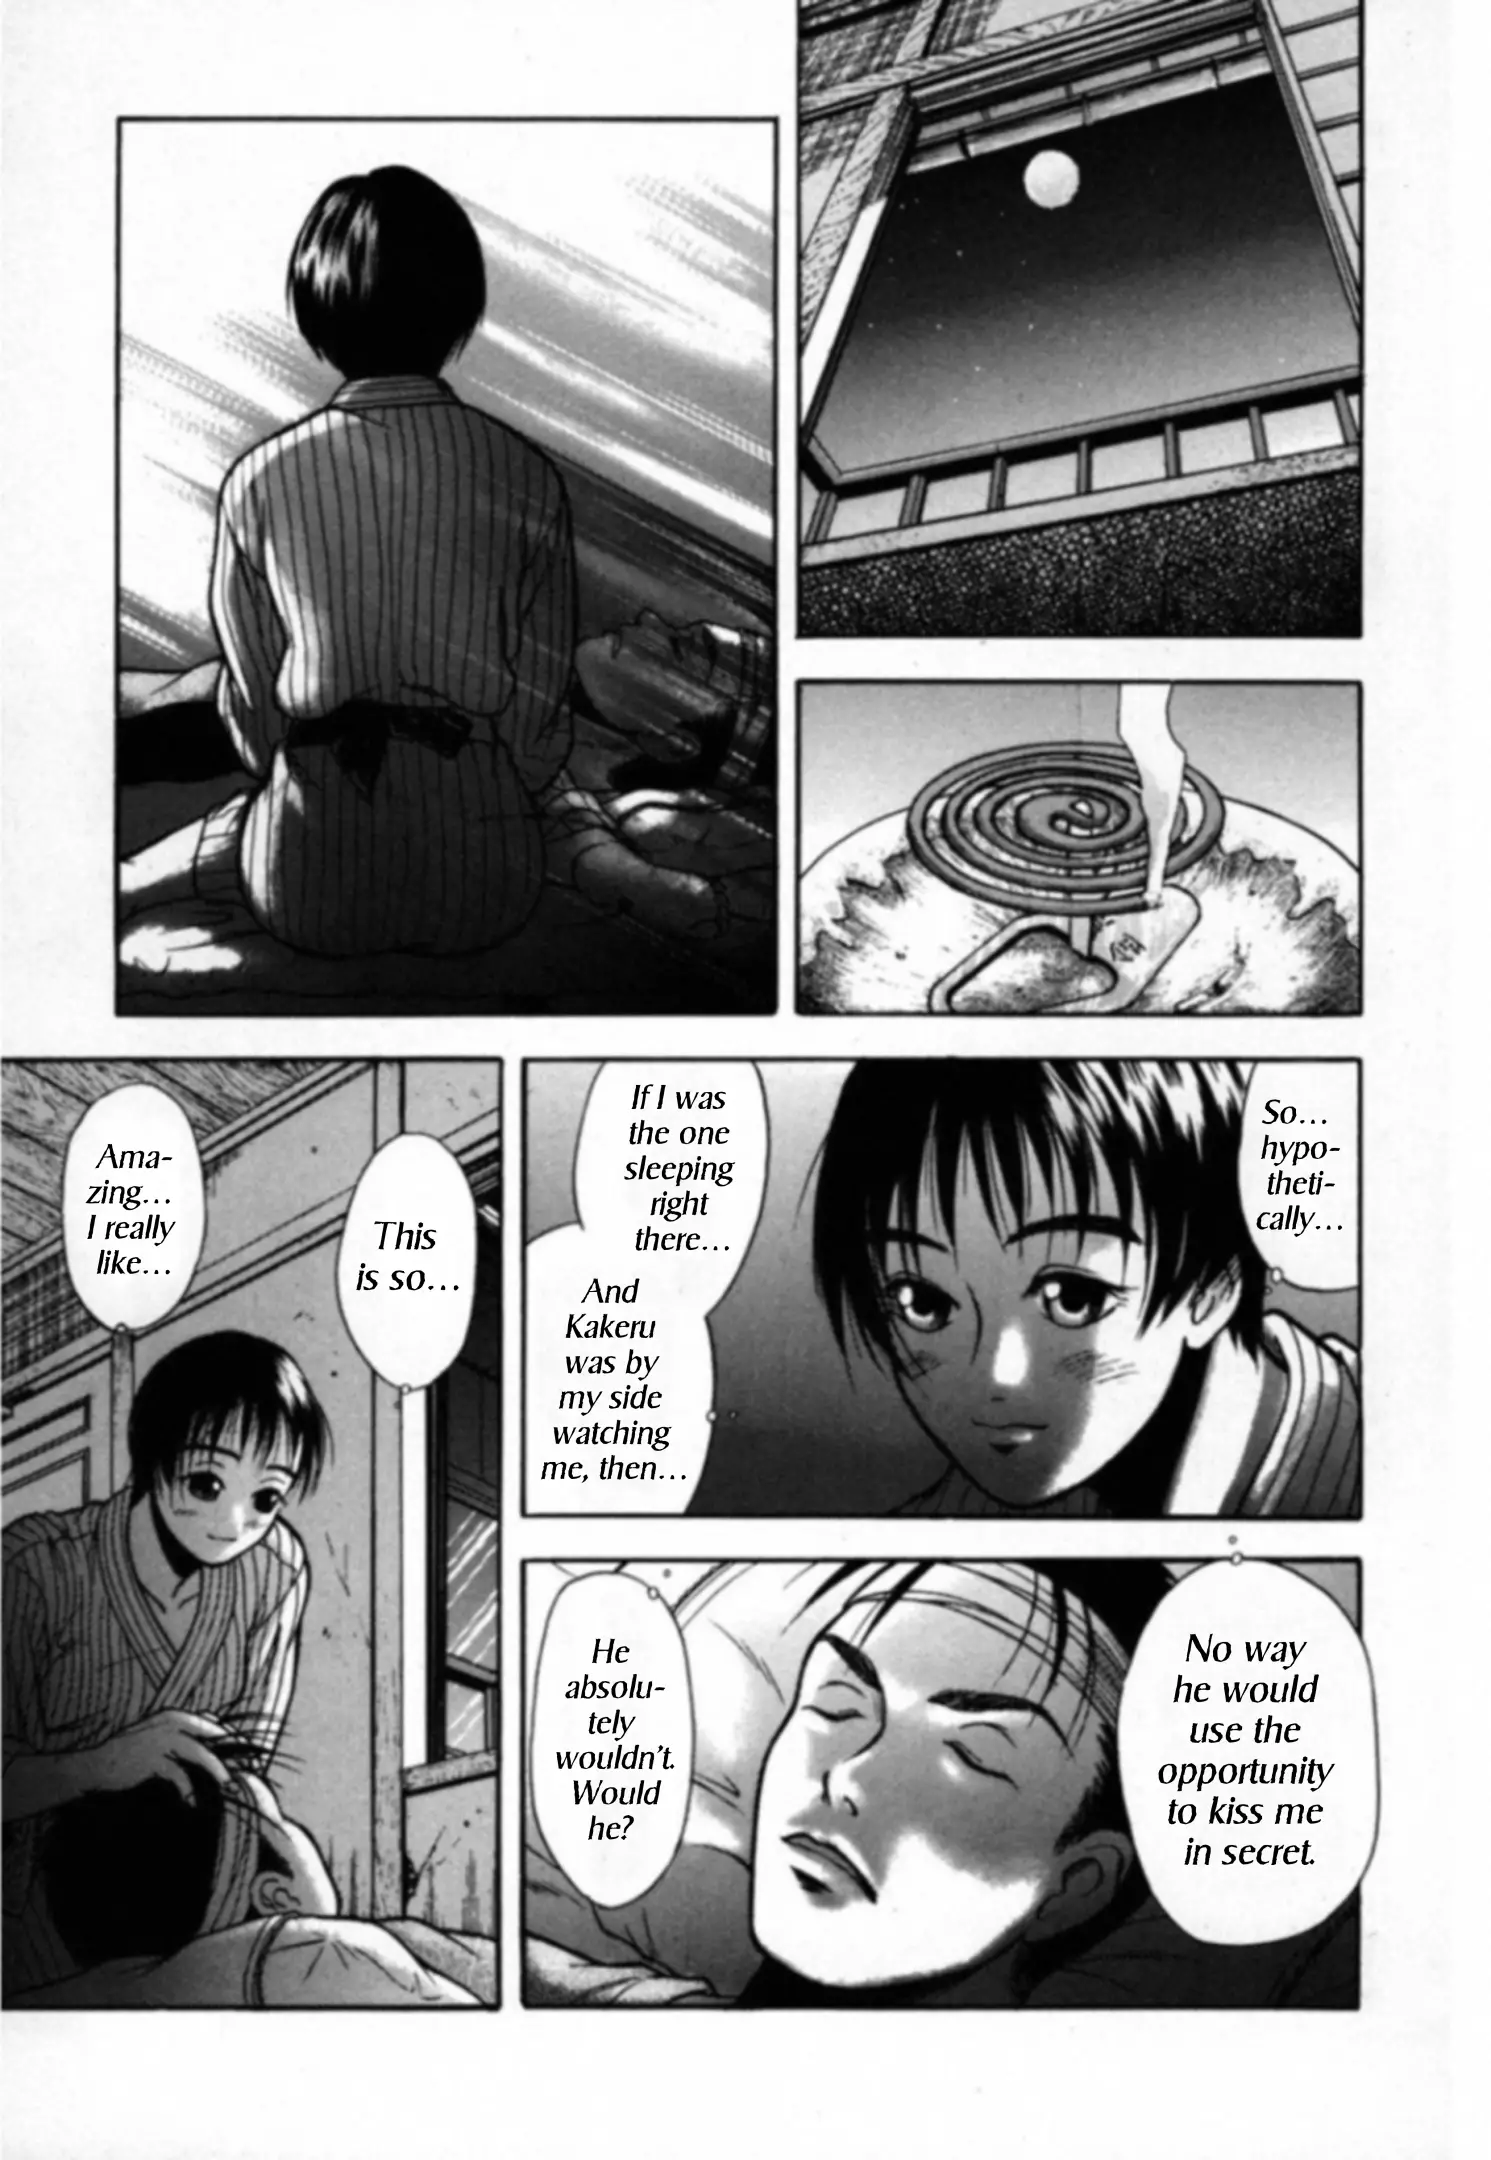 Kakeru - 17 page 12-17bef771